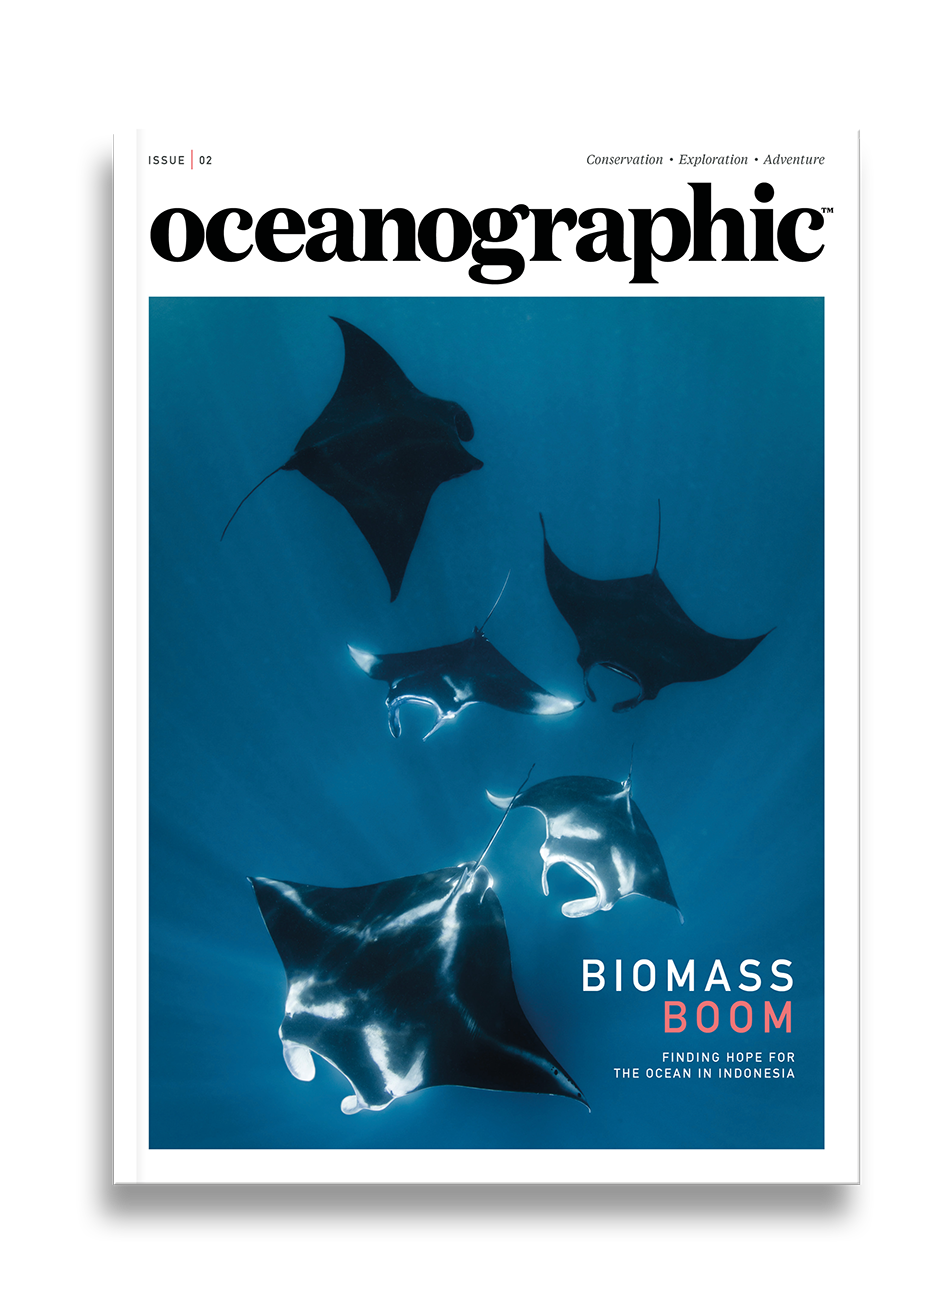 Oceanographic Magazine, Issue 02, Biomass boom